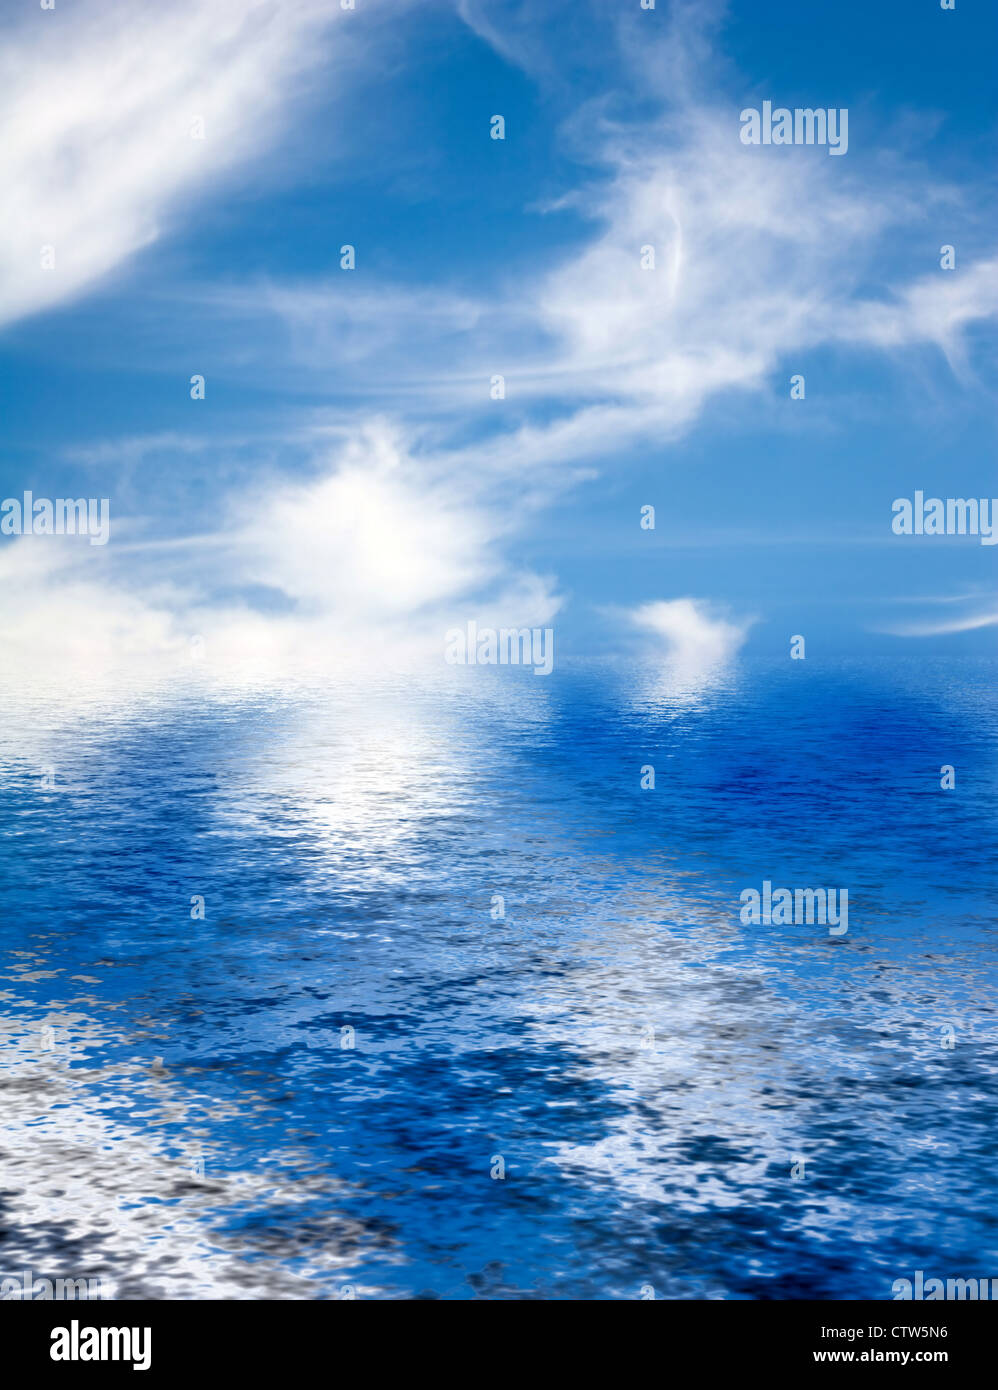 Cotone soffice come nuvole sparse in un luminoso cielo blu. Foto Stock